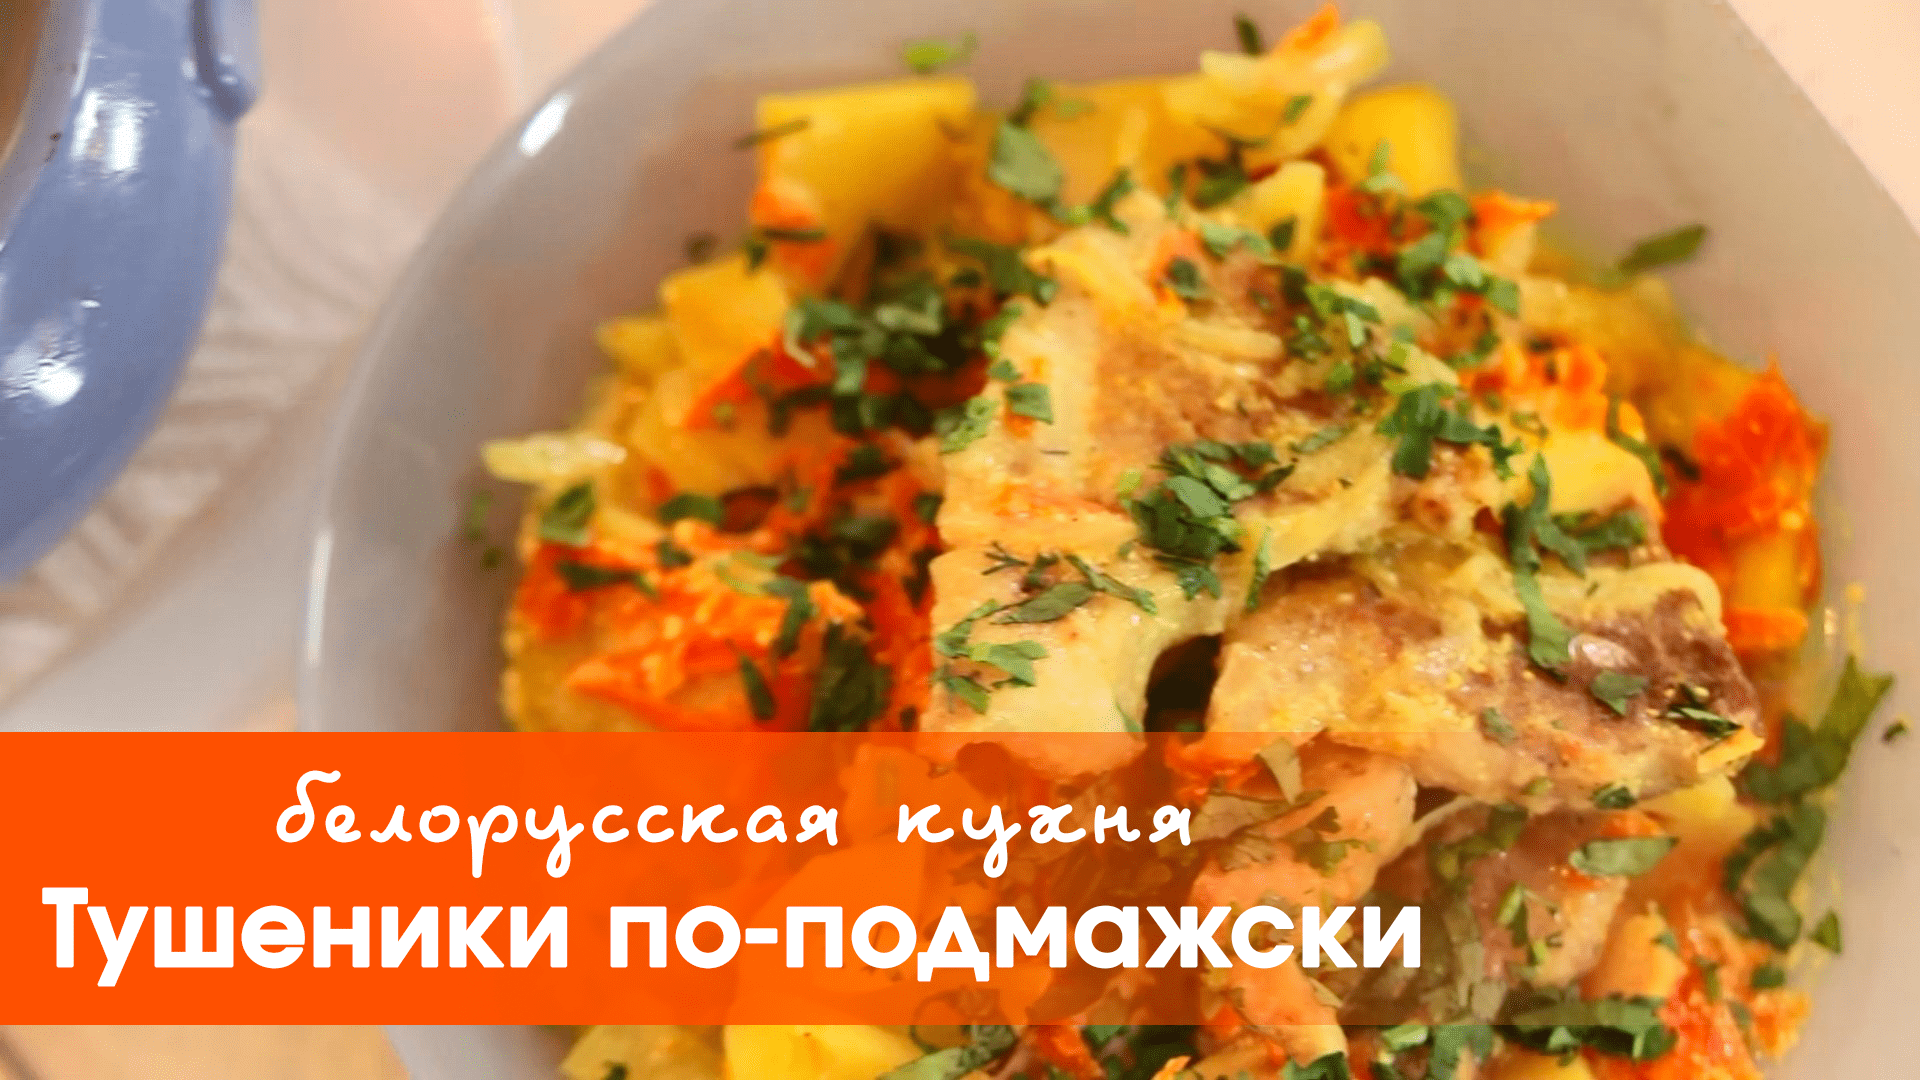 Белорусская кухня: тушеники по-подмажски